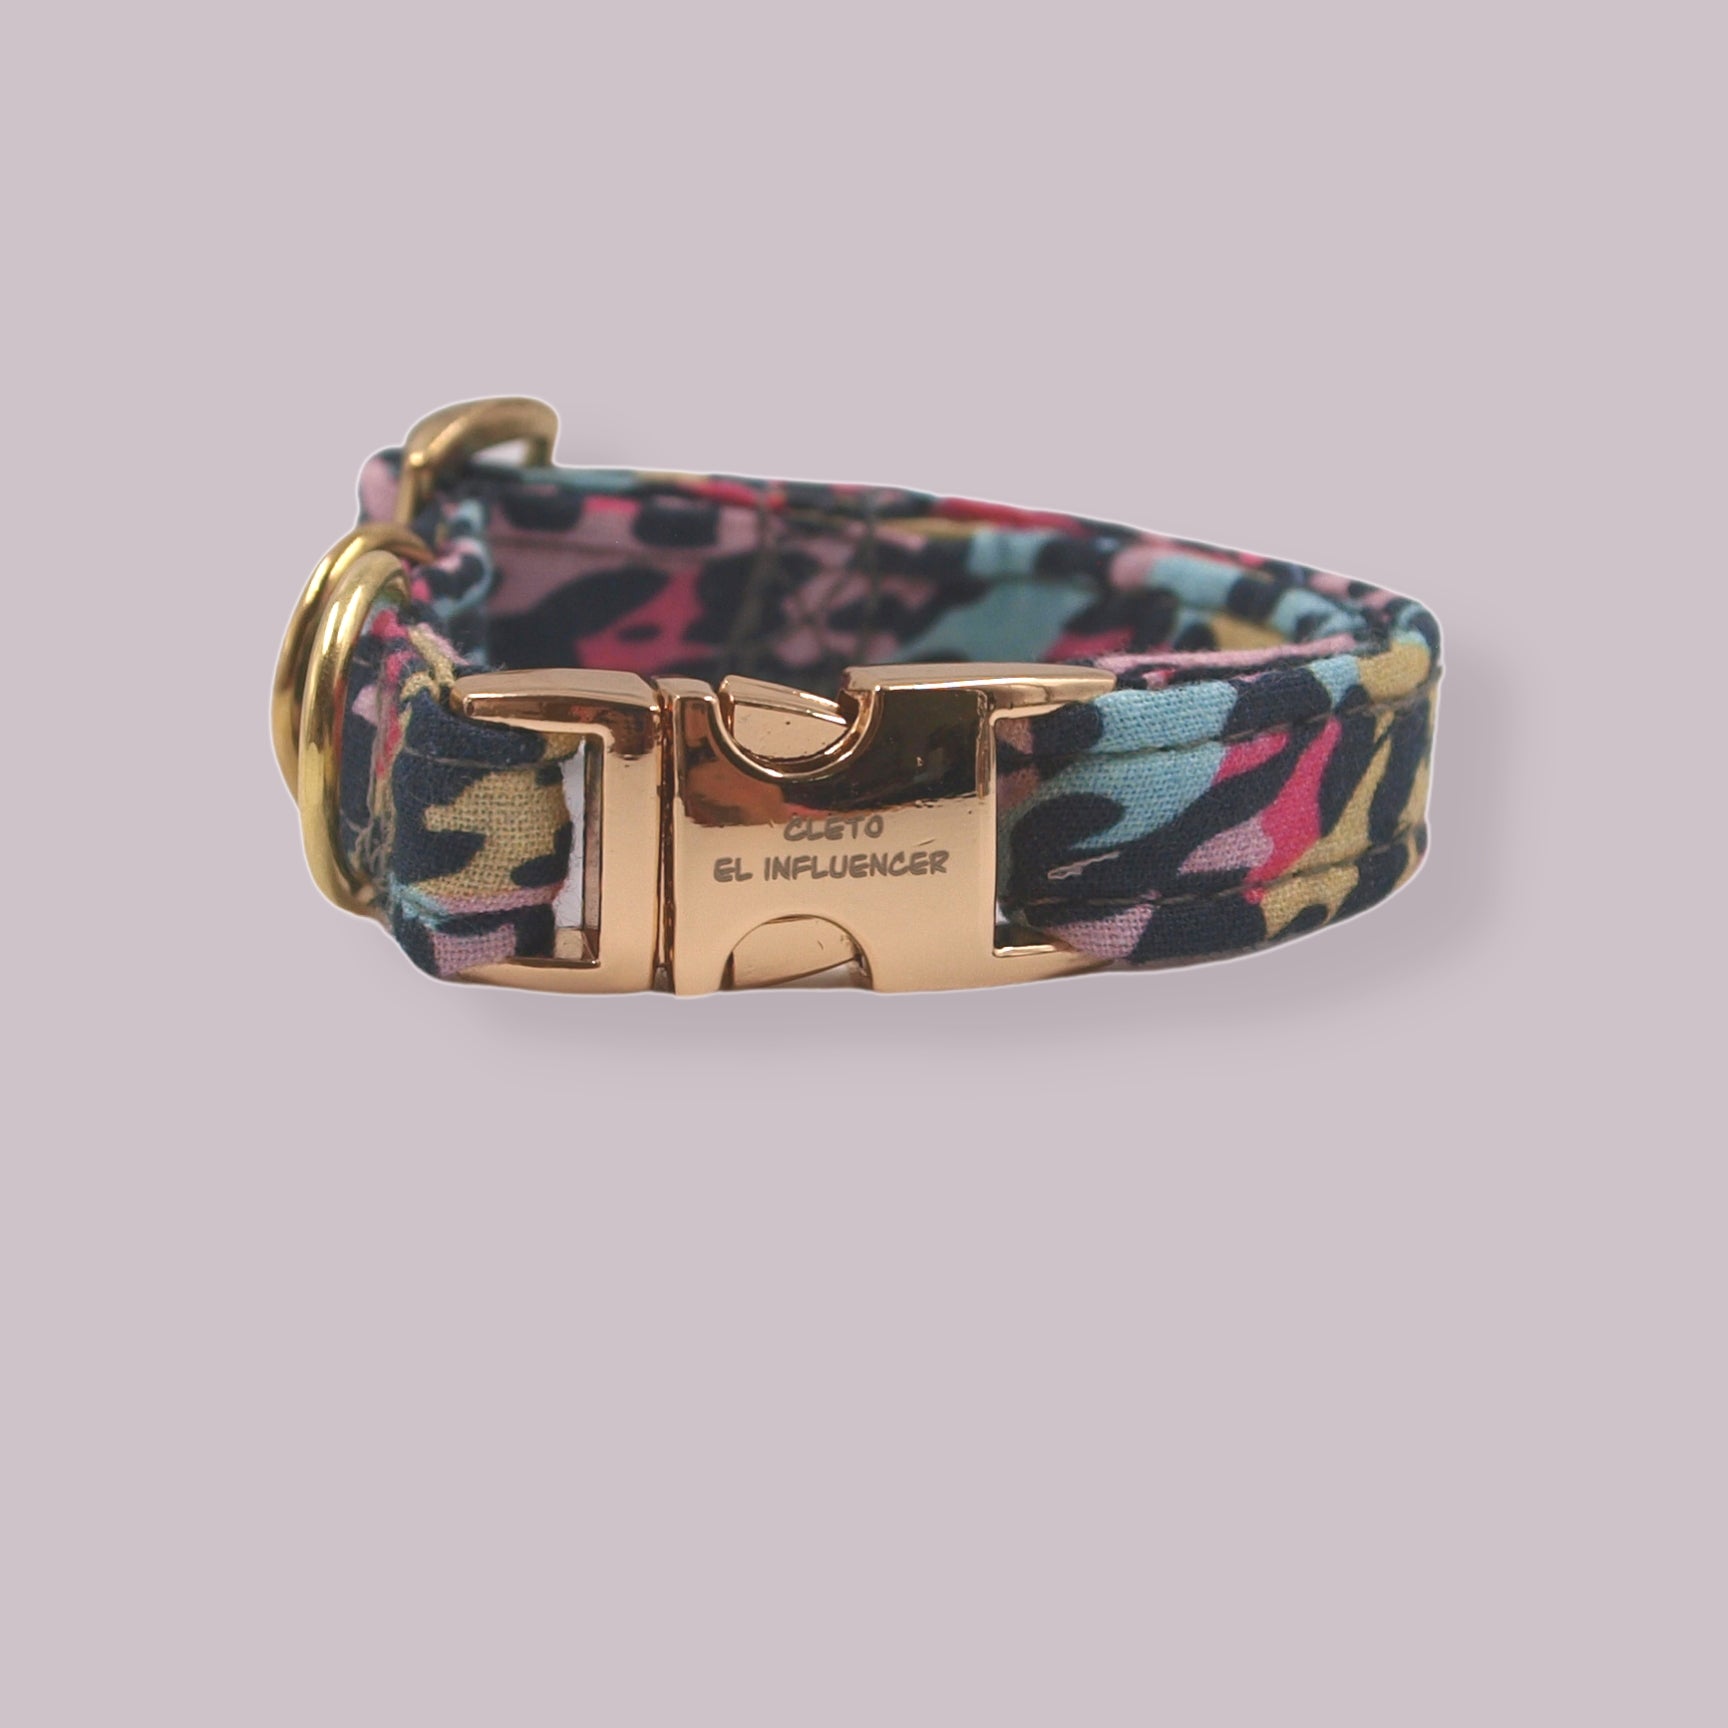 Collar SMALL para mascota con herrajes dorados, el collar es de patrón de leopardo con rosa y color menta.